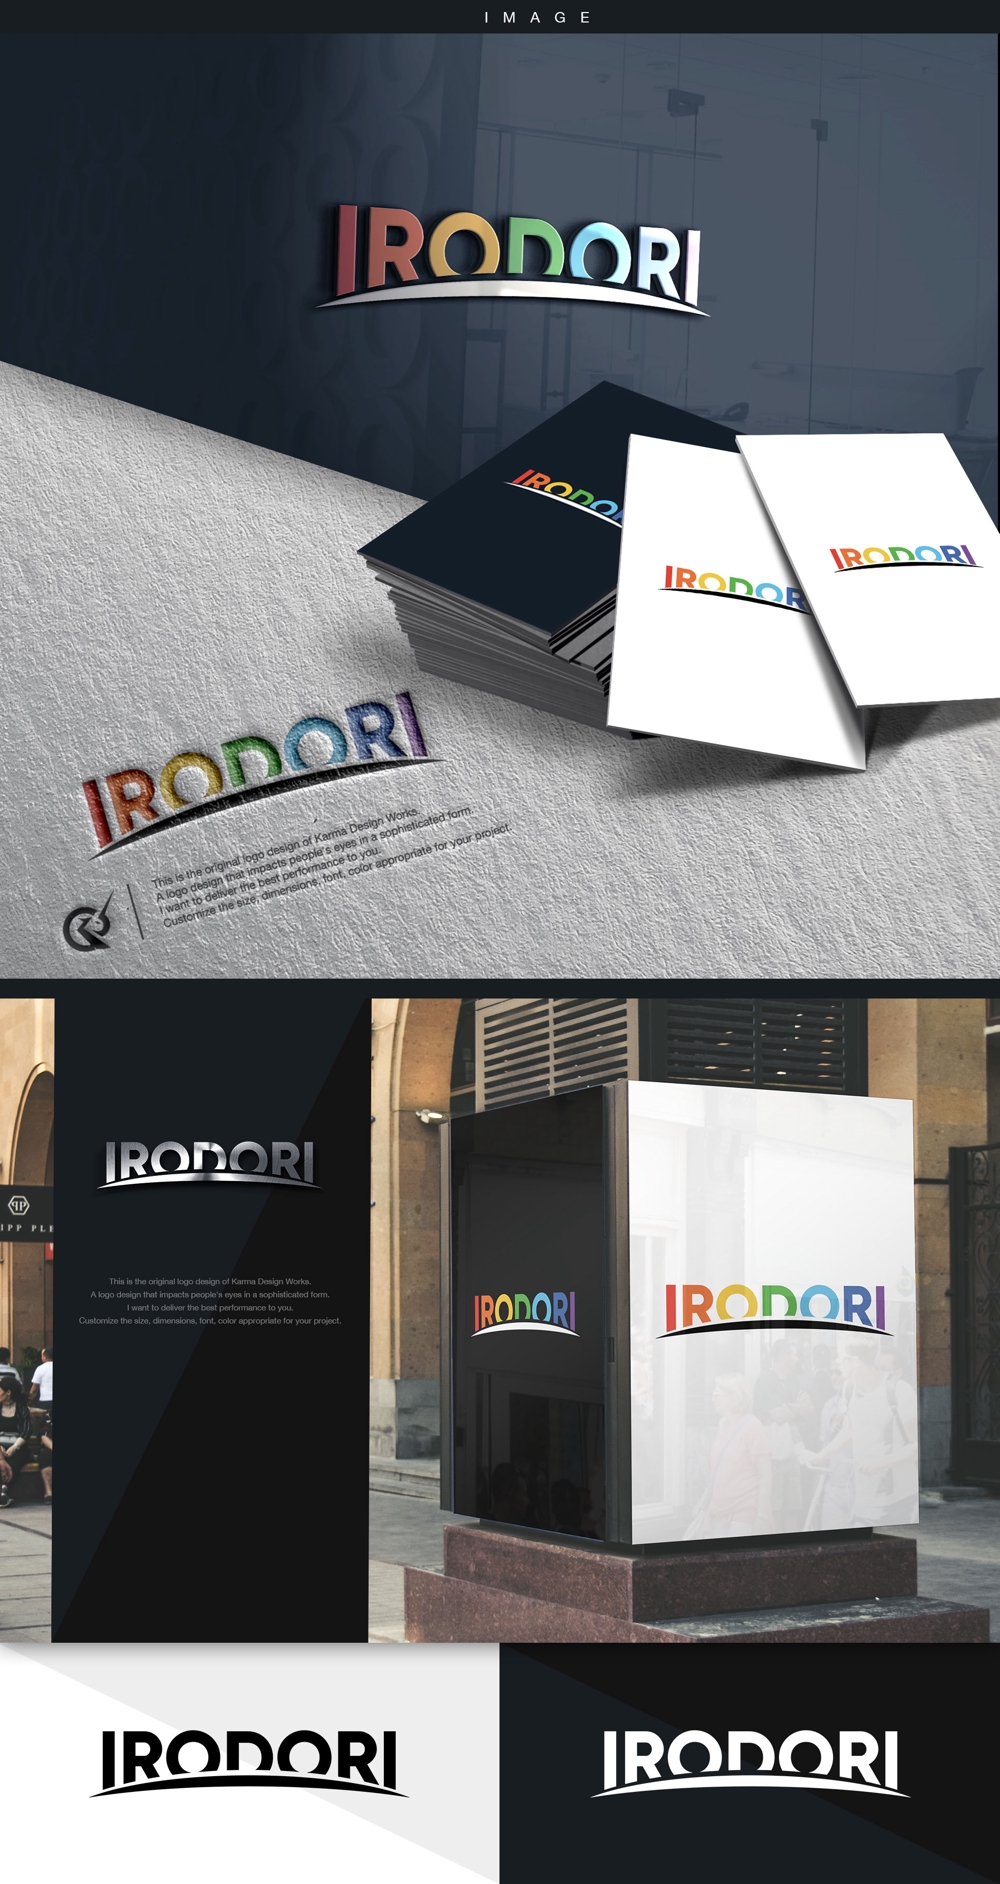 コンサルティング会社「株式会社IRODORI」のロゴ  